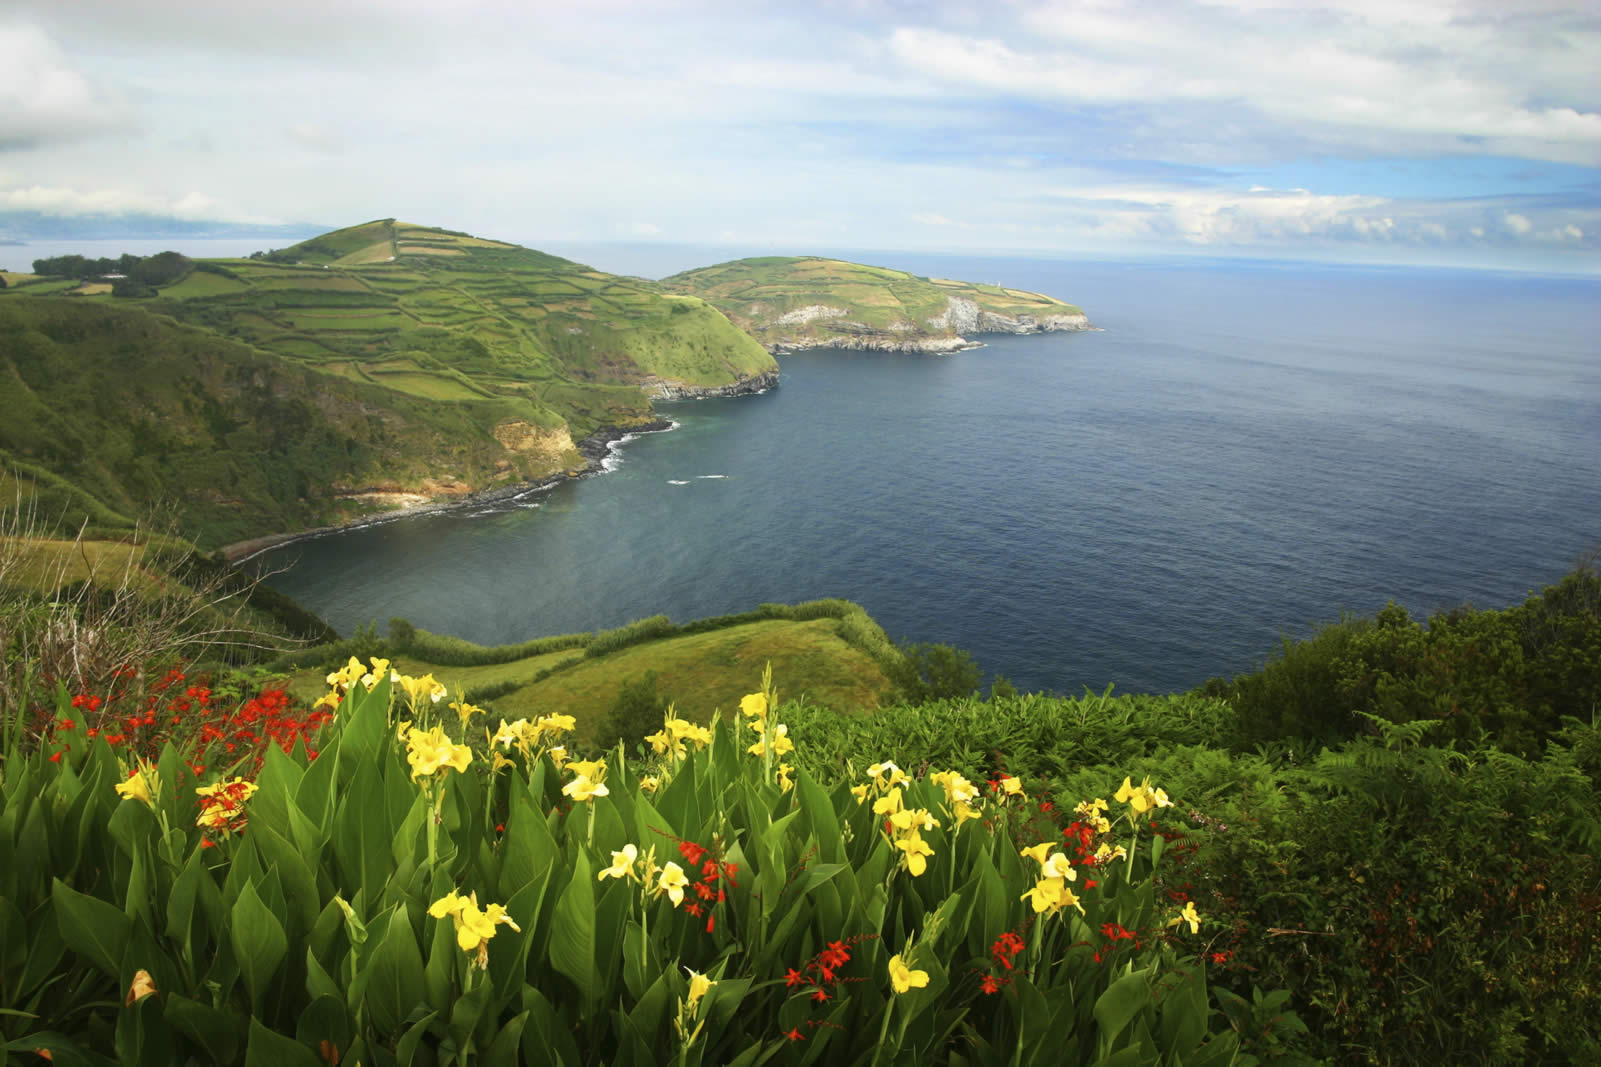 Circuit Le grand tour des Açores, São Miguel, Flores, Faial, Pico, Terceira, 5 îles en 15 jours